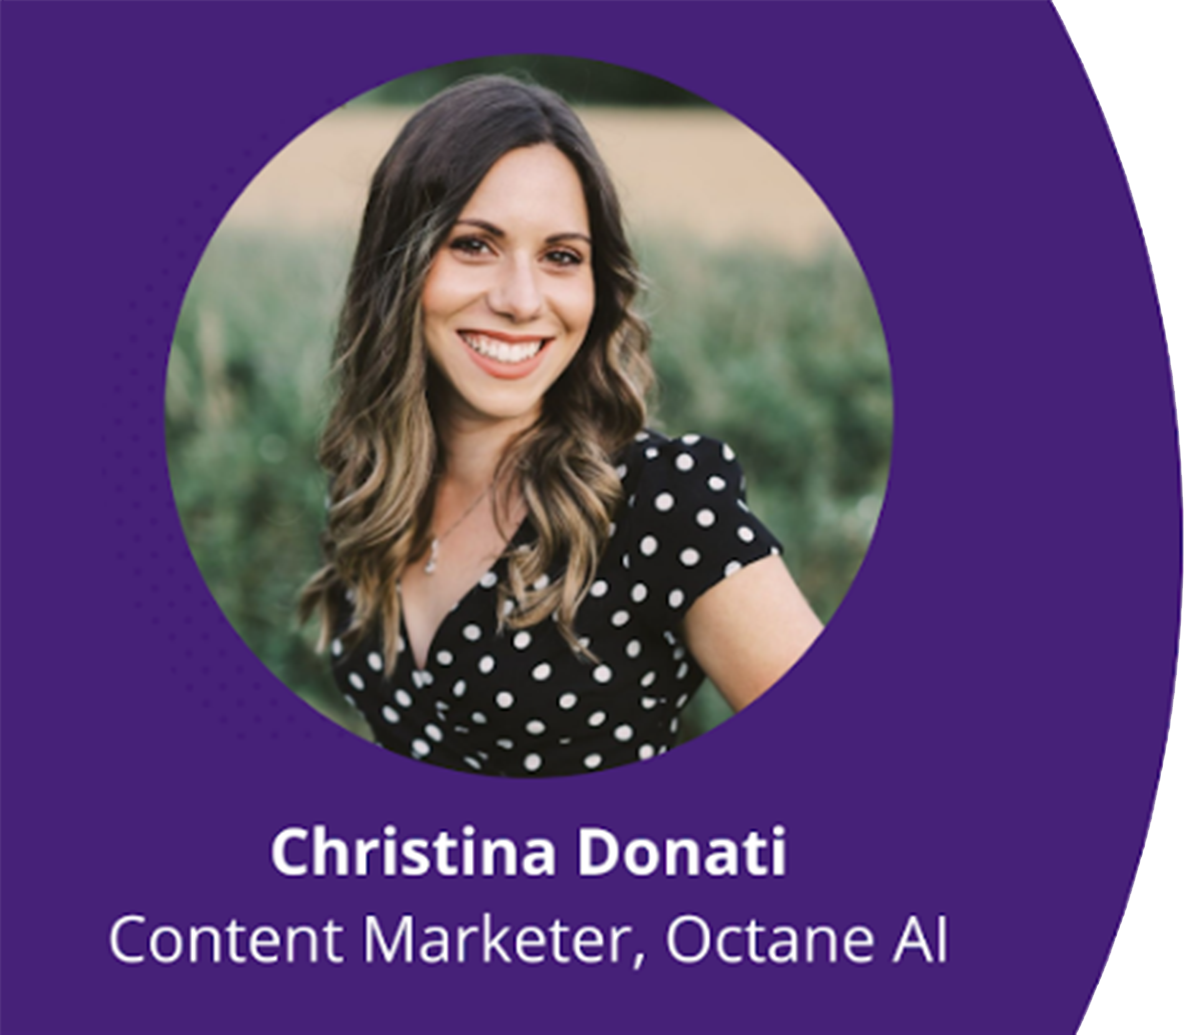 Christina Donati, Content Marketer, Octane AI